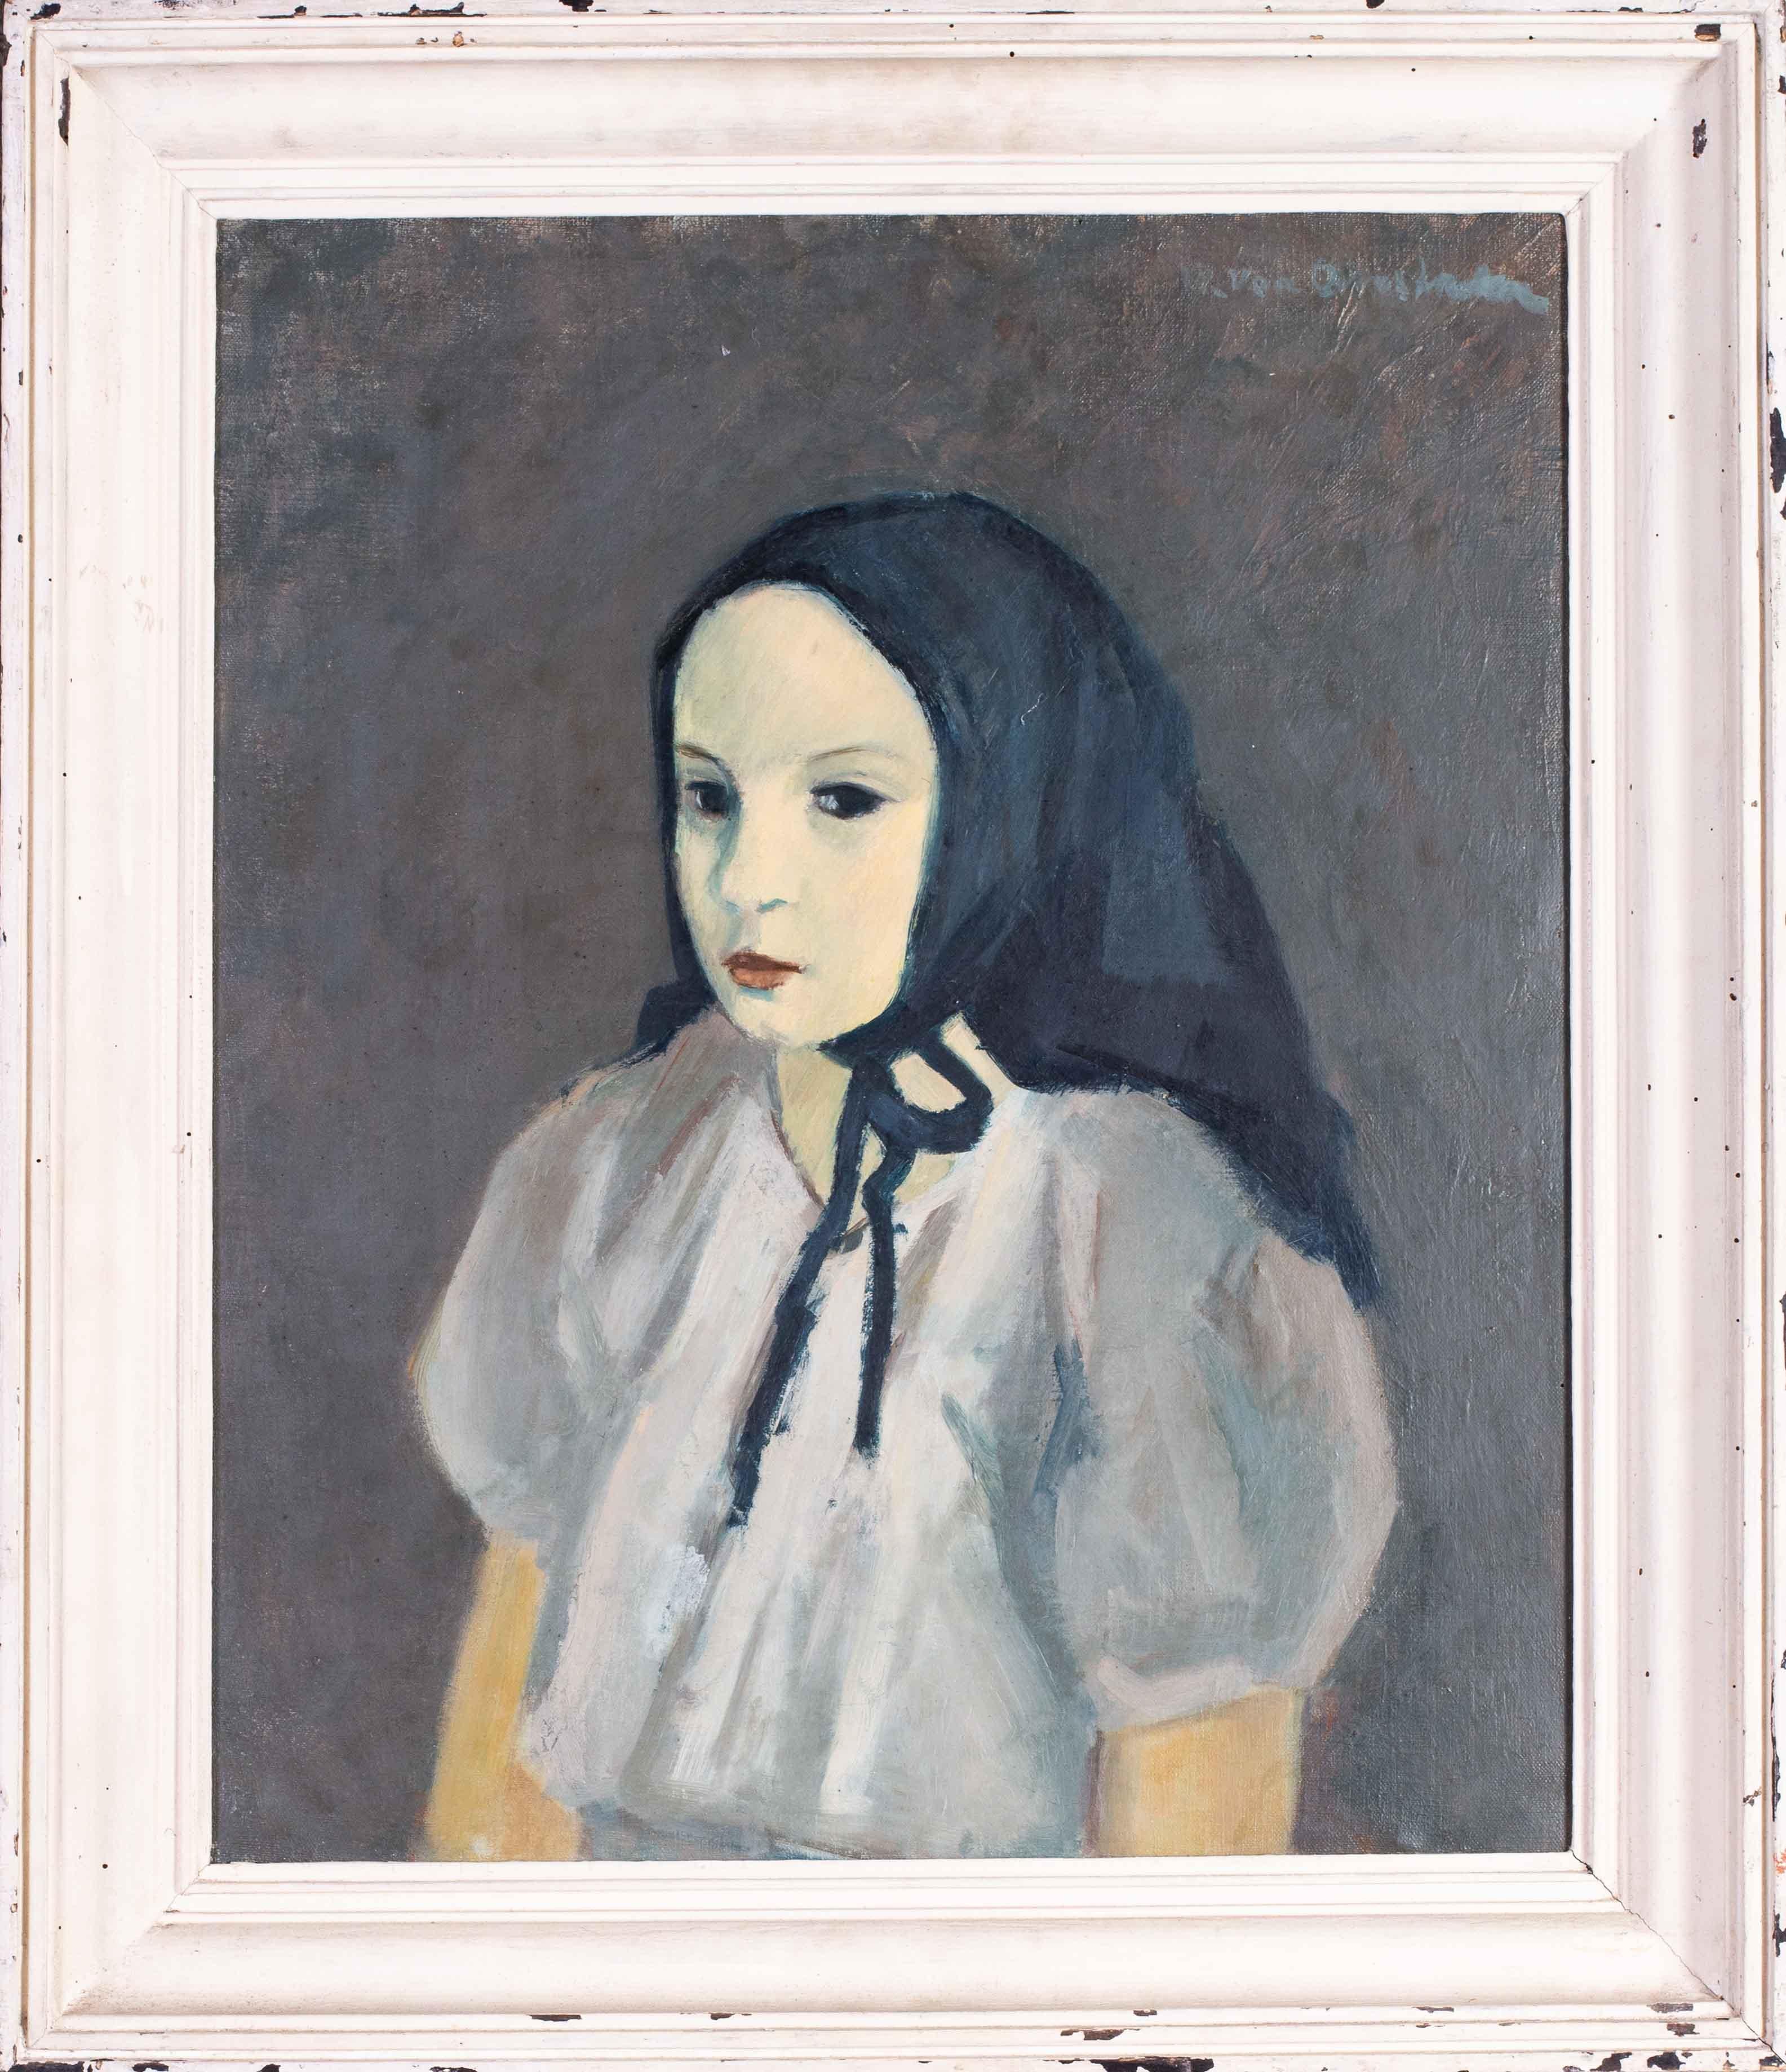 Postimpressionistisches Porträt von Anne Marie des belgischen Künstlers Van Overstraeten